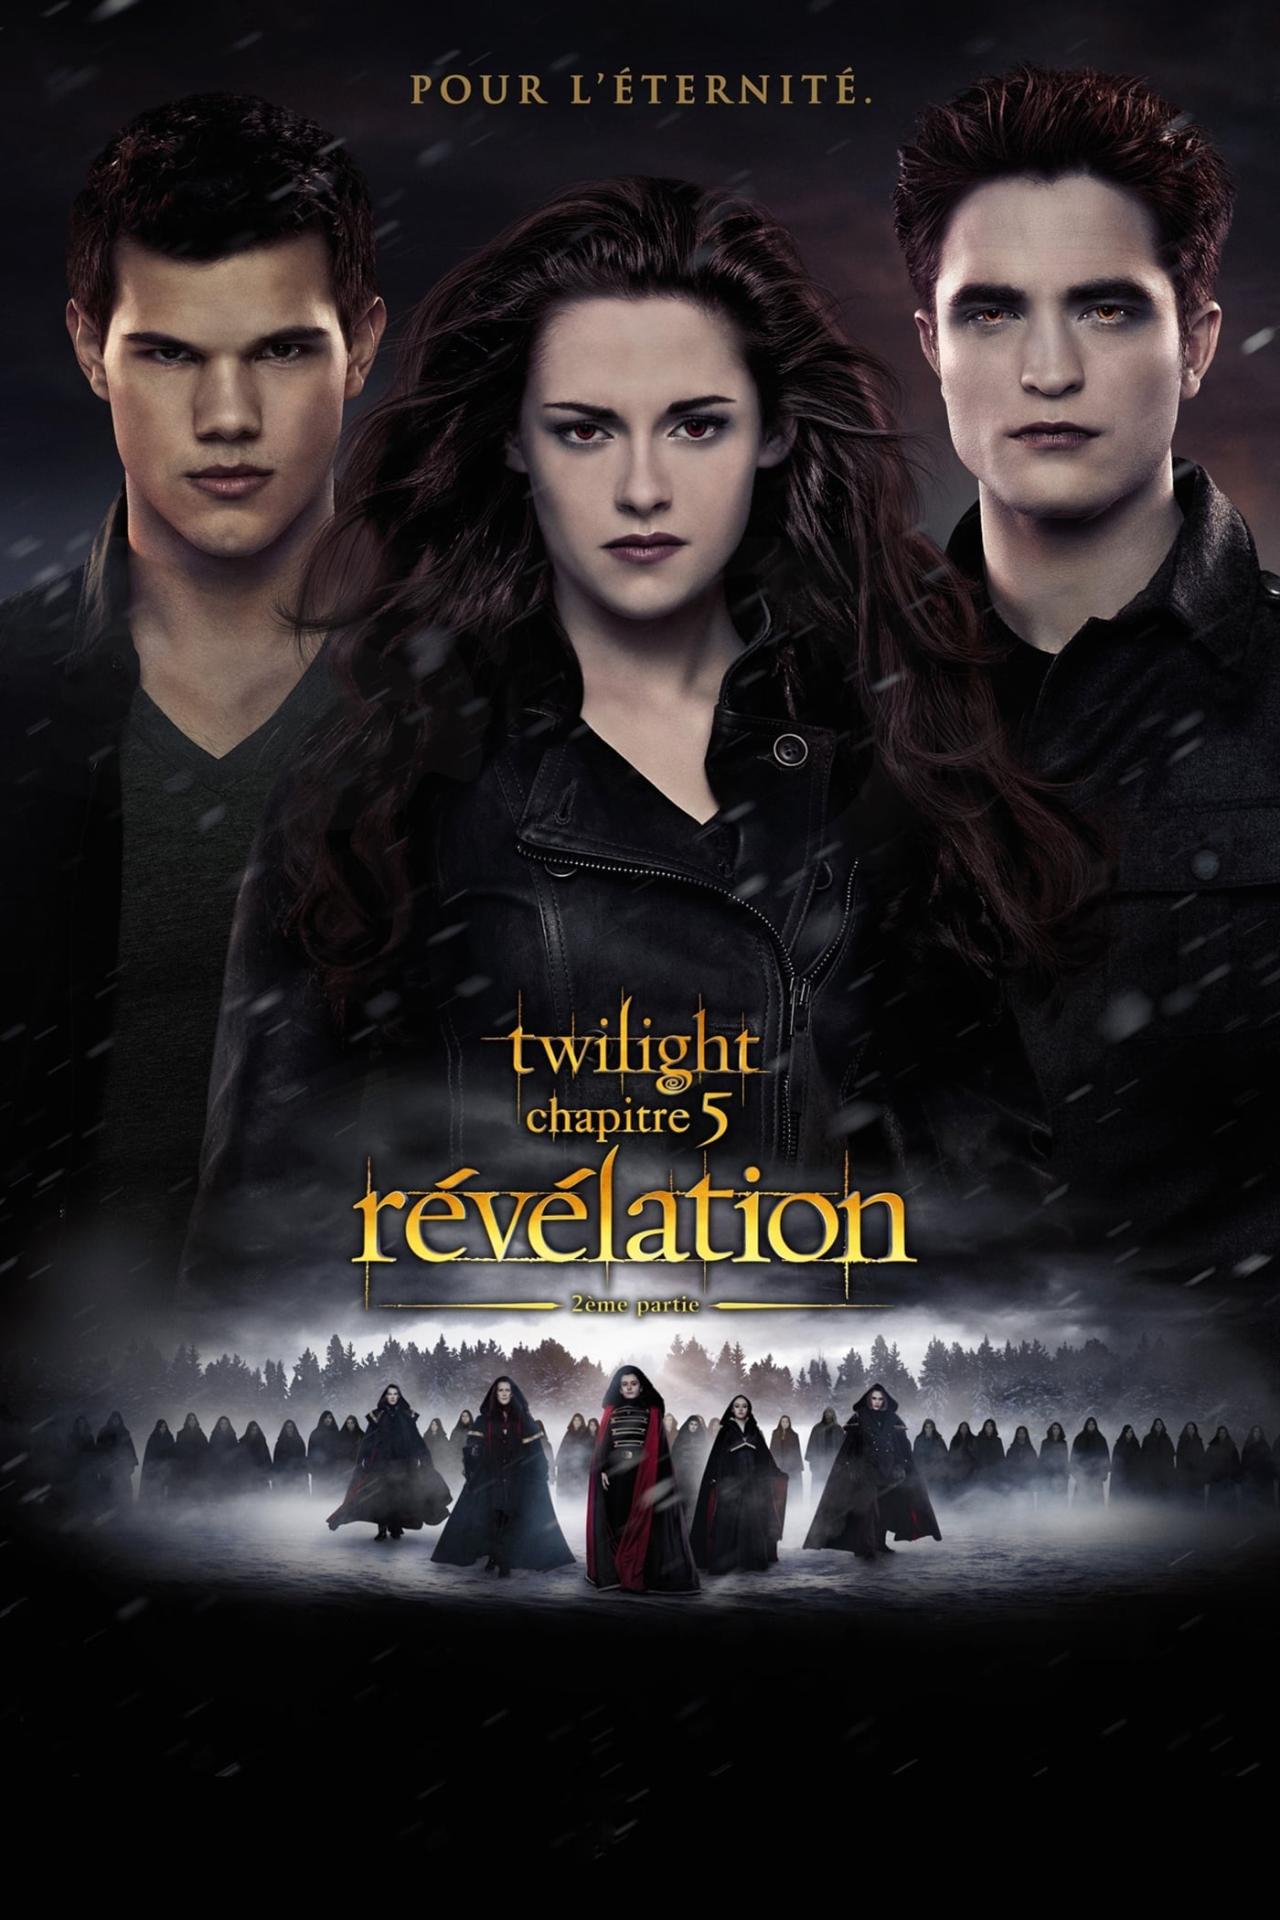 Twilight, chapitre 5 : Révélation, 2e partie est-il disponible sur Netflix ou autre ?